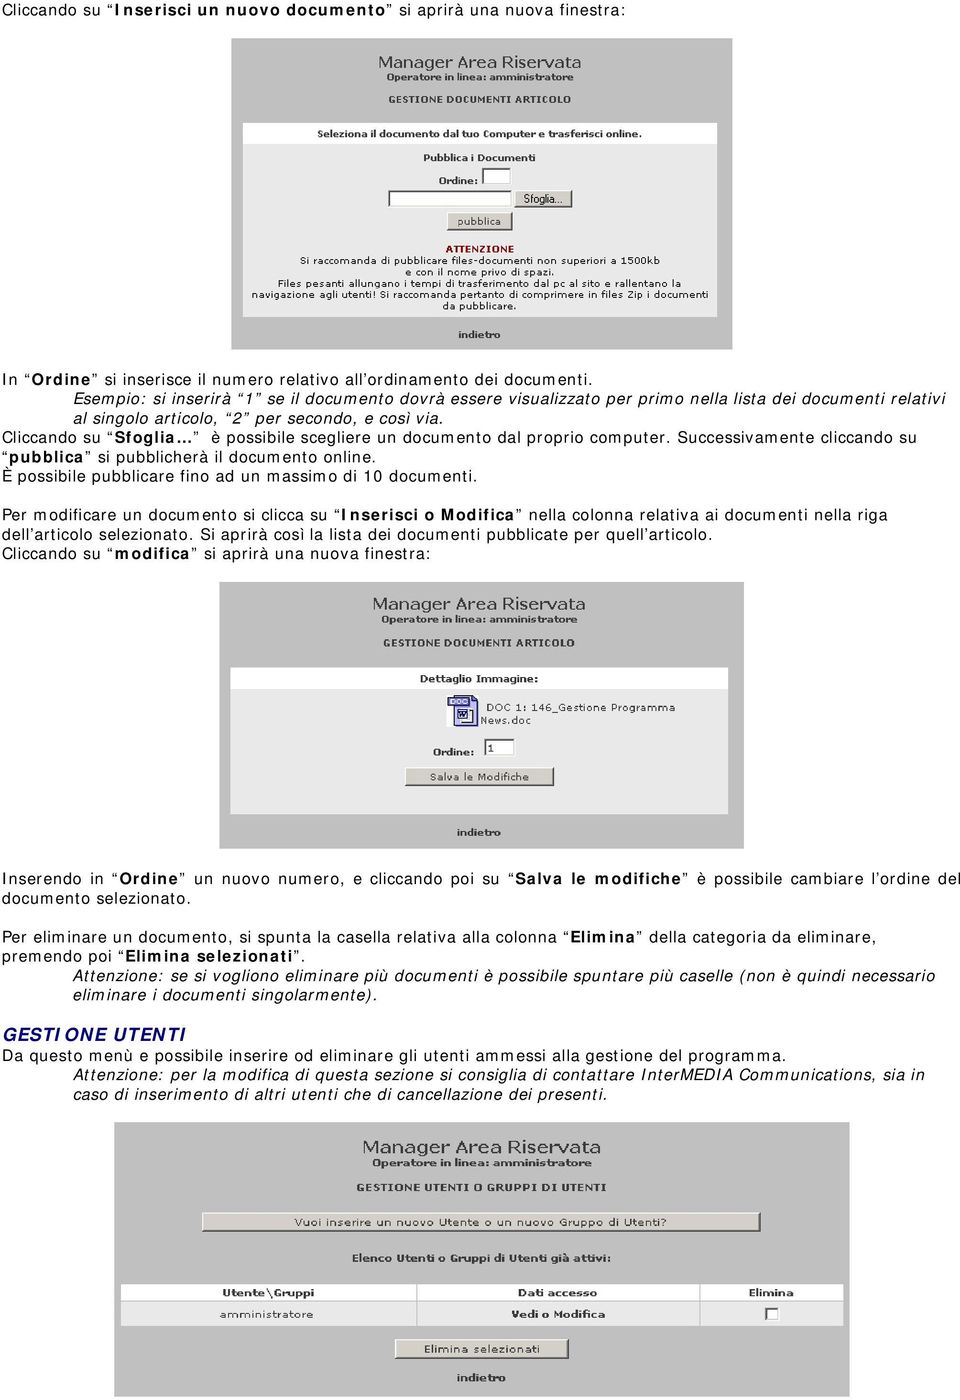 Cliccando su Sfoglia è possibile scegliere un documento dal proprio computer. Successivamente cliccando su pubblica si pubblicherà il documento online.